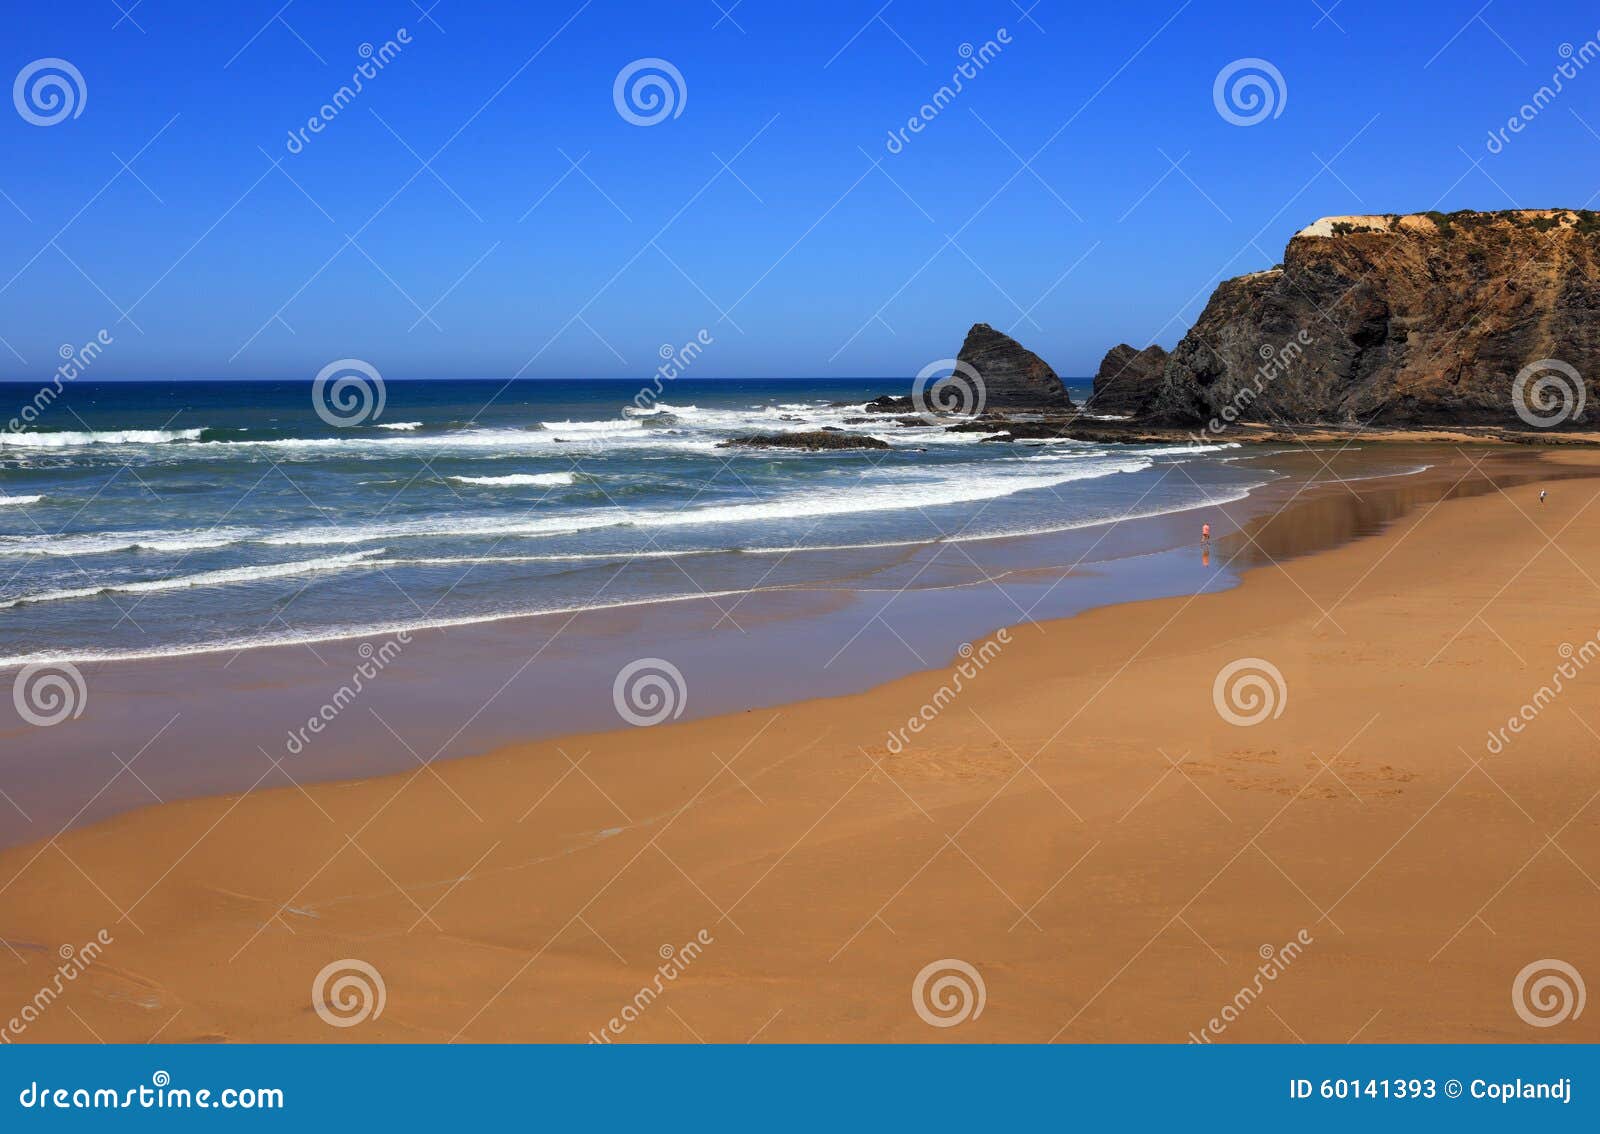 odeceixe beach, vicentine coast, alentejo, portugal.